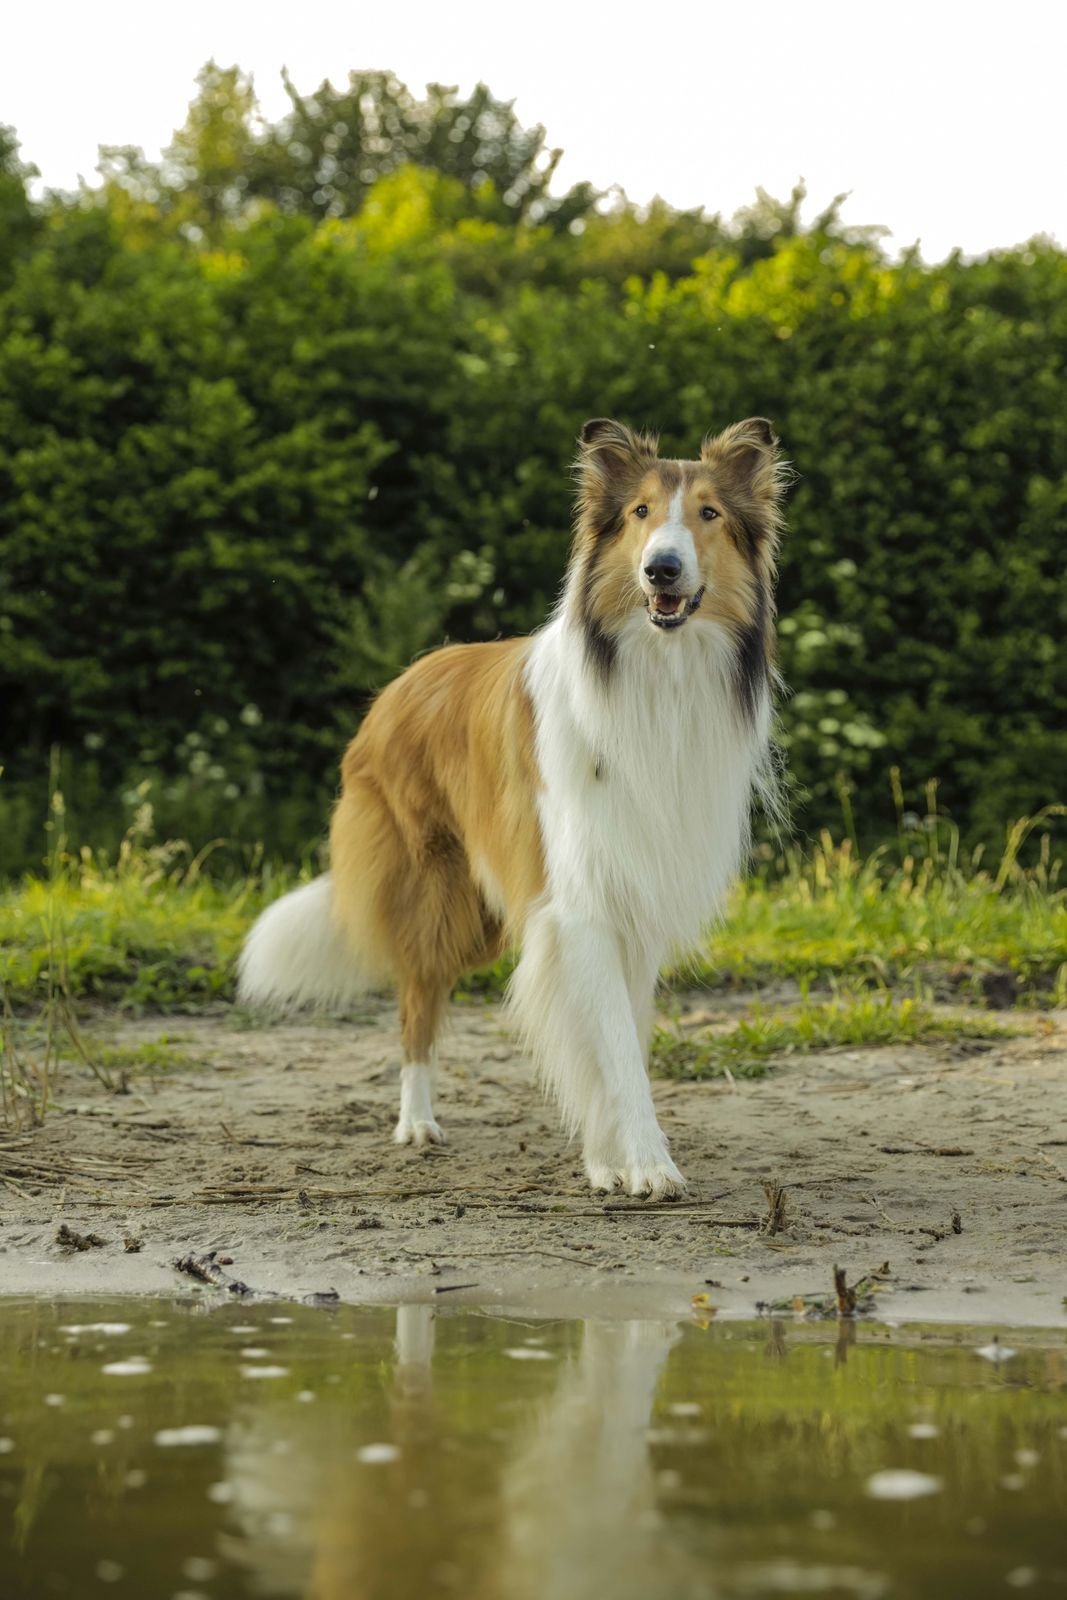 Lassie se vrací do kin v novém zpracování původního příběhu